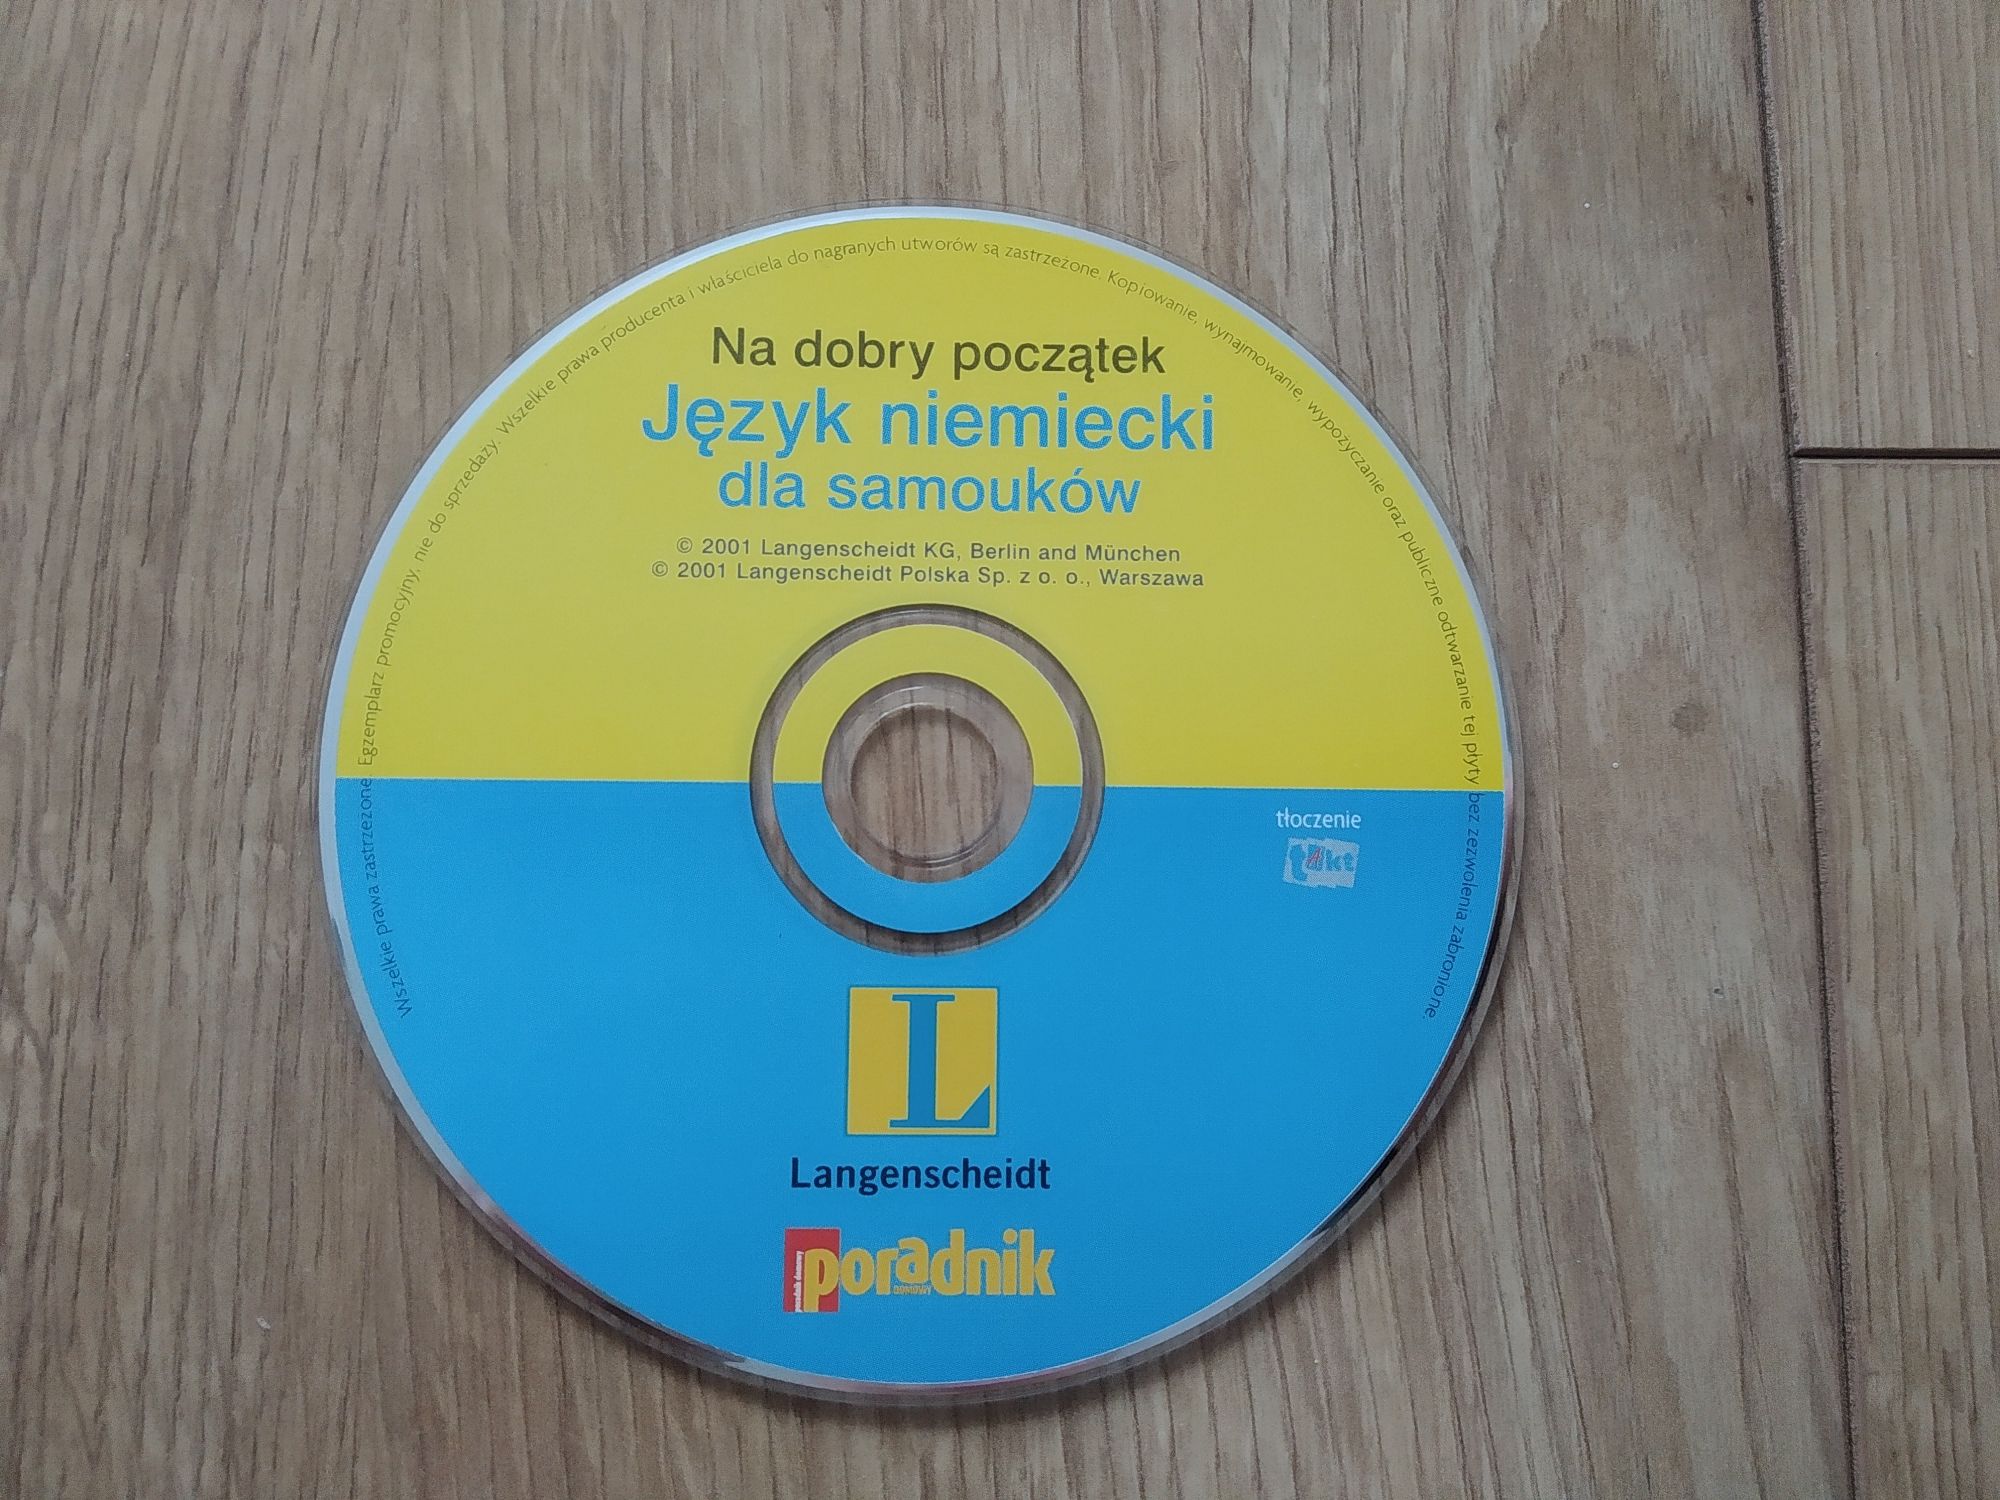 94. CD język niemiecki dla samouków CD-ROM langensheidt